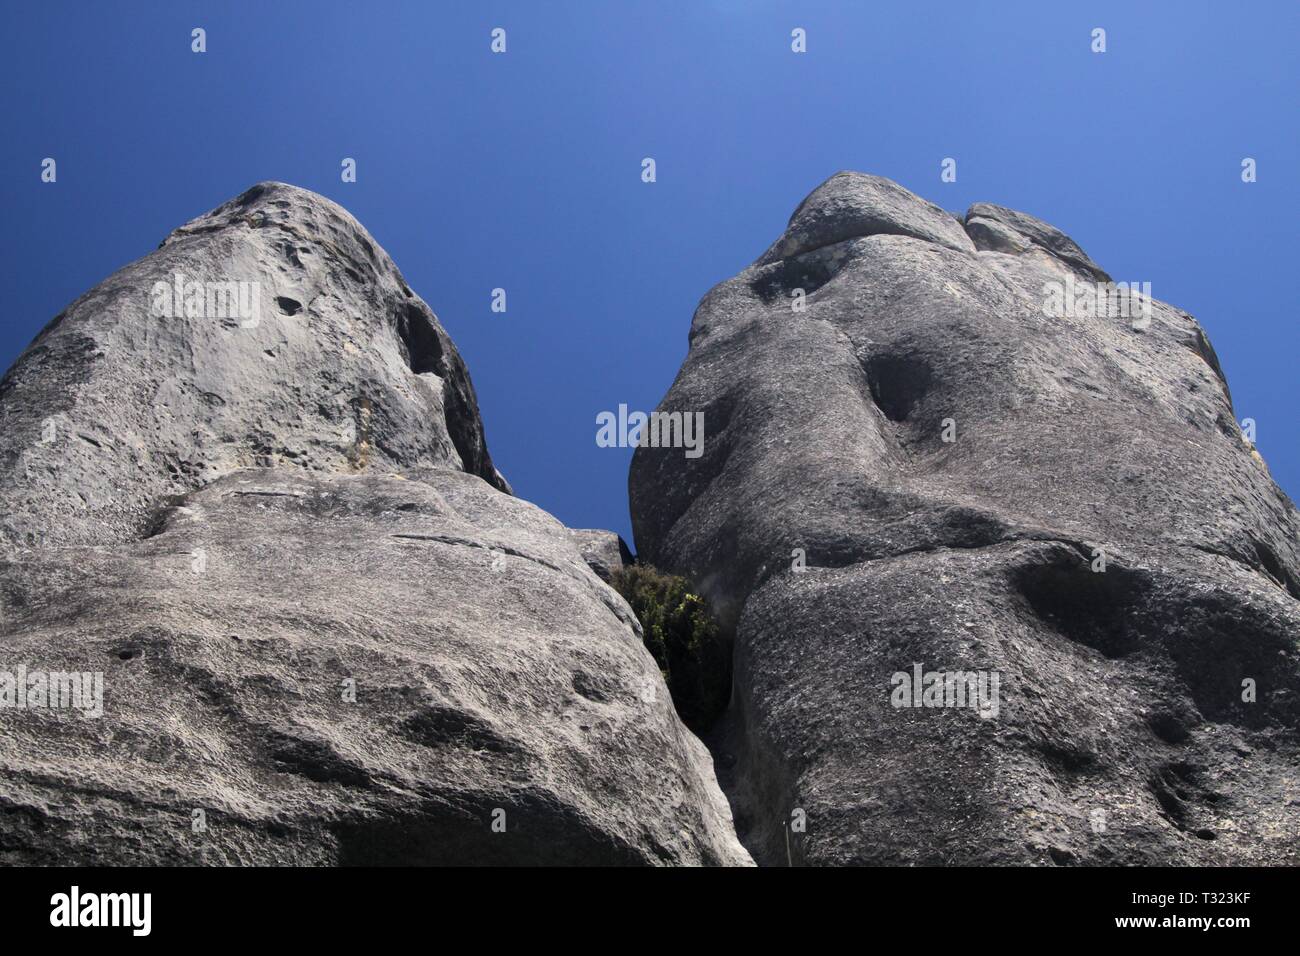 Castle Hill, Nueva Zelanda, Isla Sur: Cantos rodados de piedra caliza dispersos sobre una pradera contrastando con un cielo azul sin nubes Foto de stock